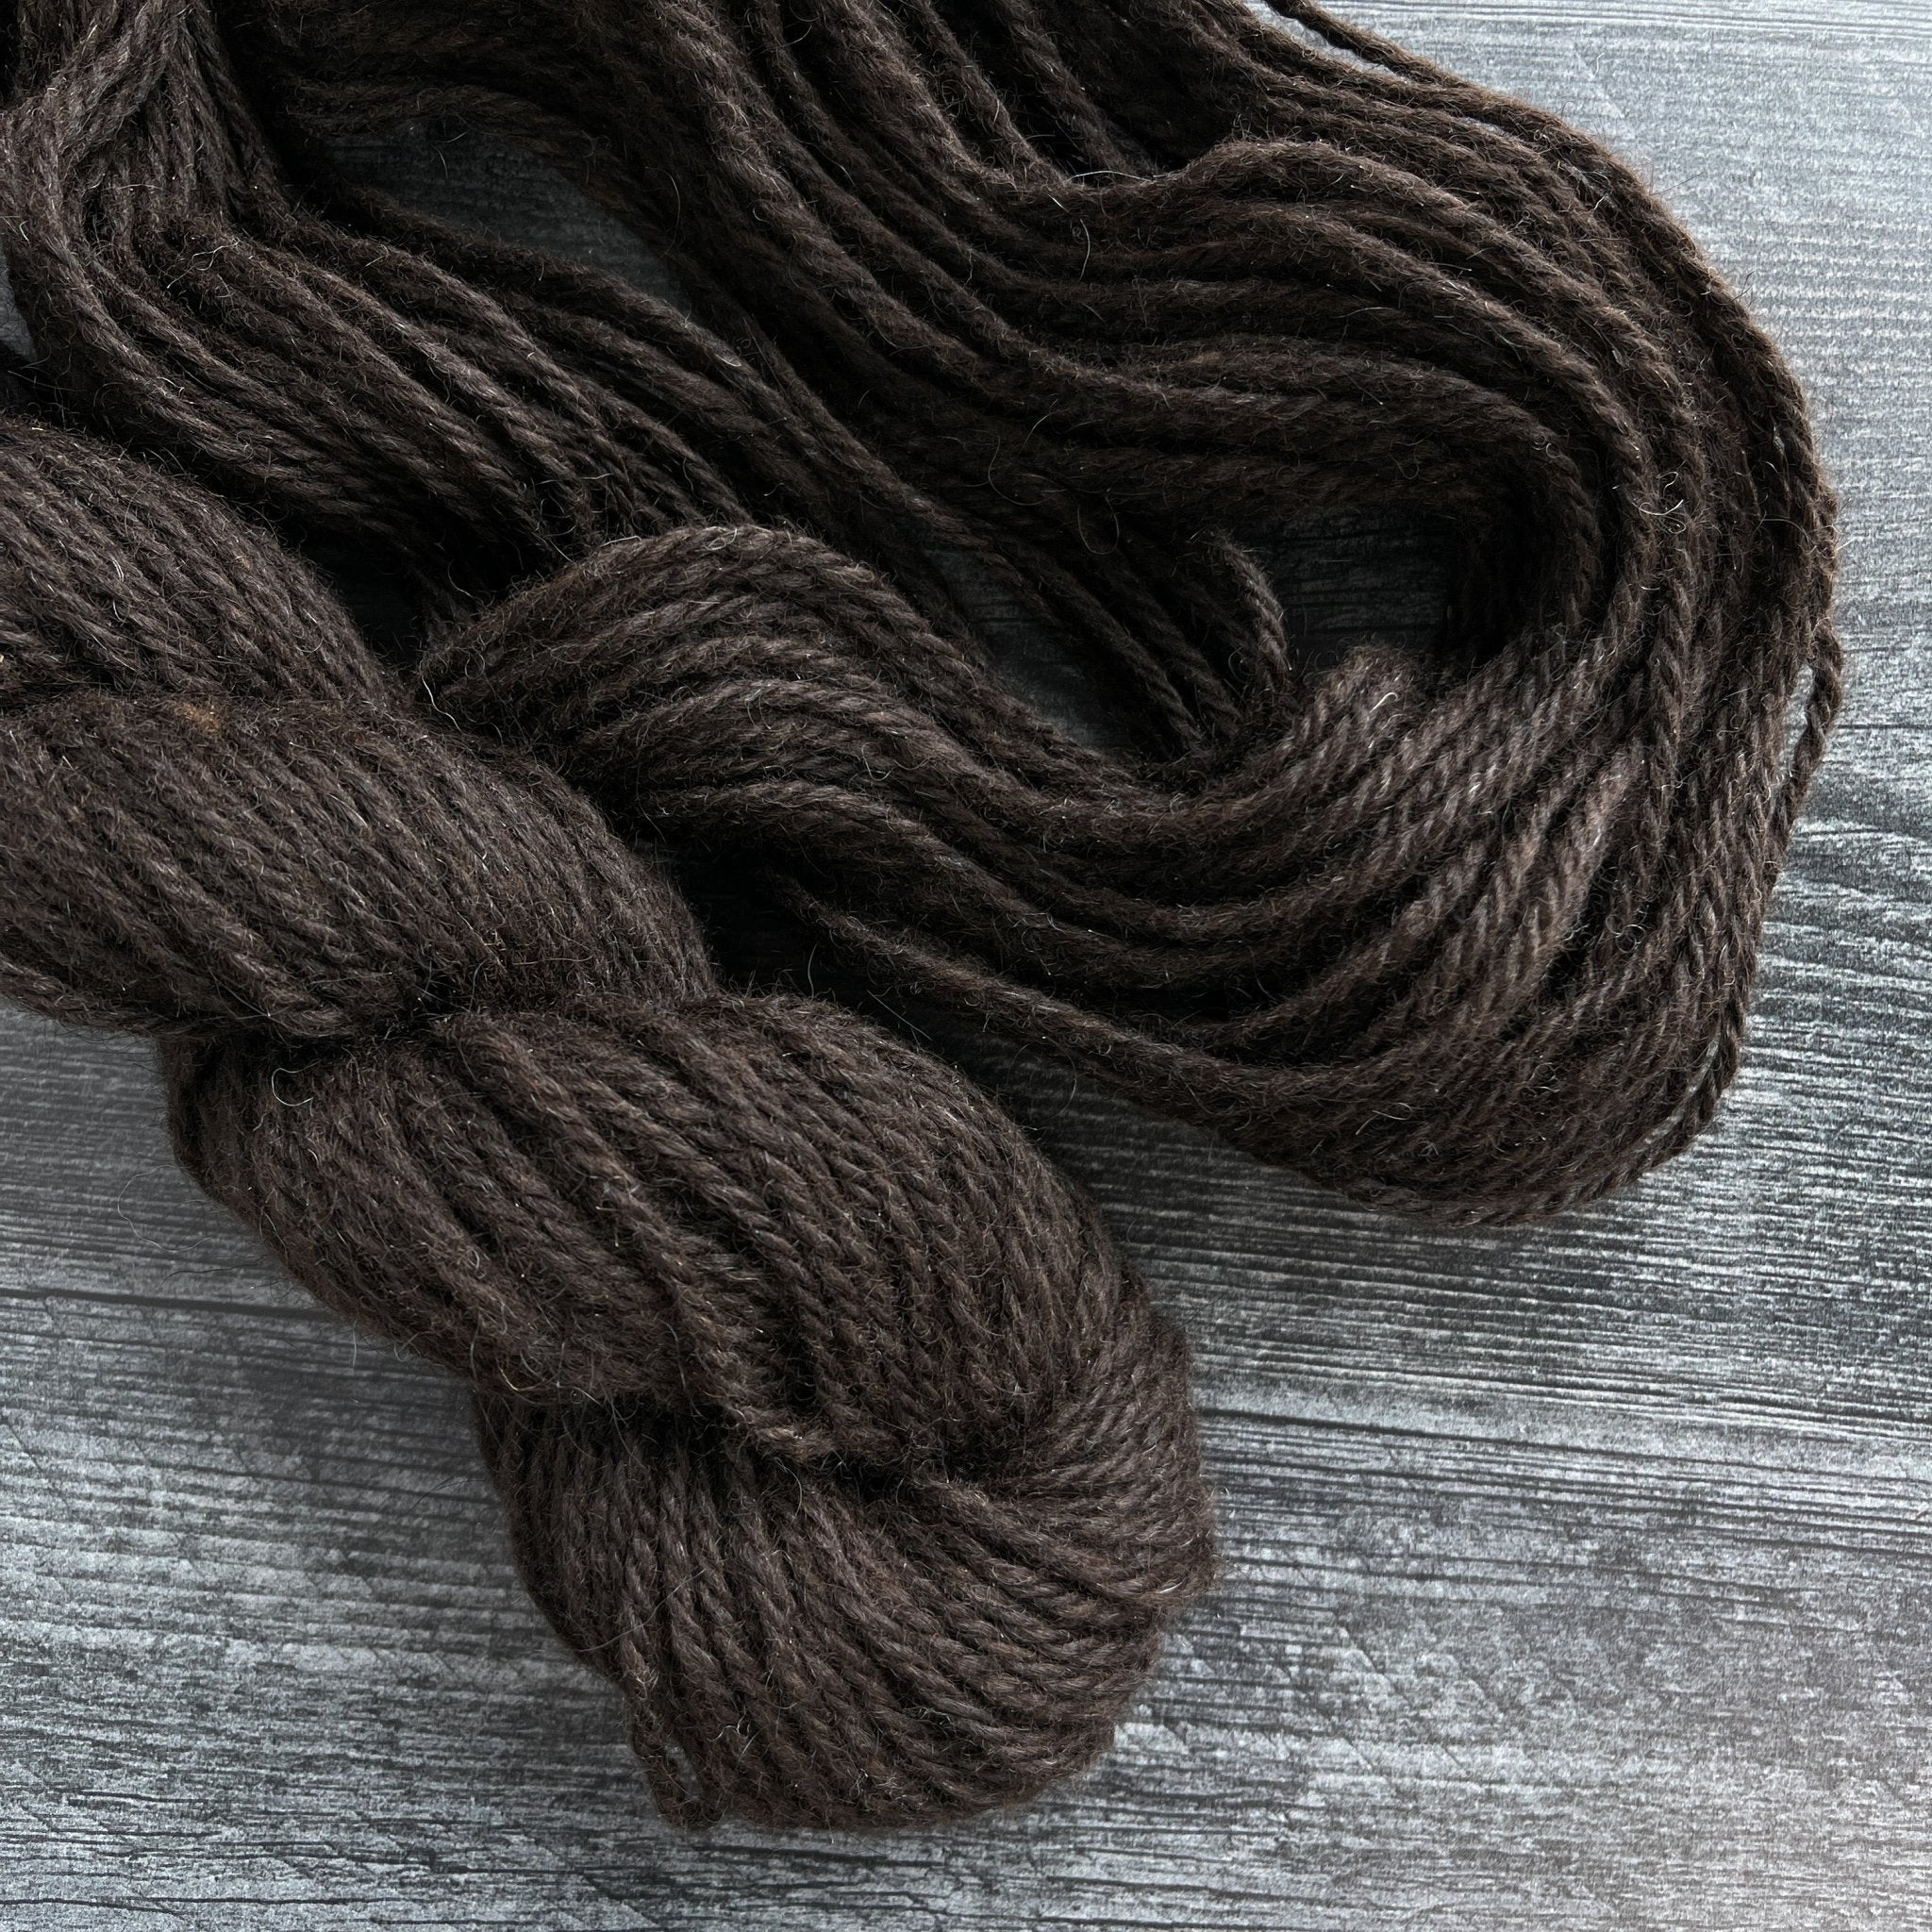 Super Chunky Yarn Core Spun Yarn - Black - Icelandic Wool Rug or